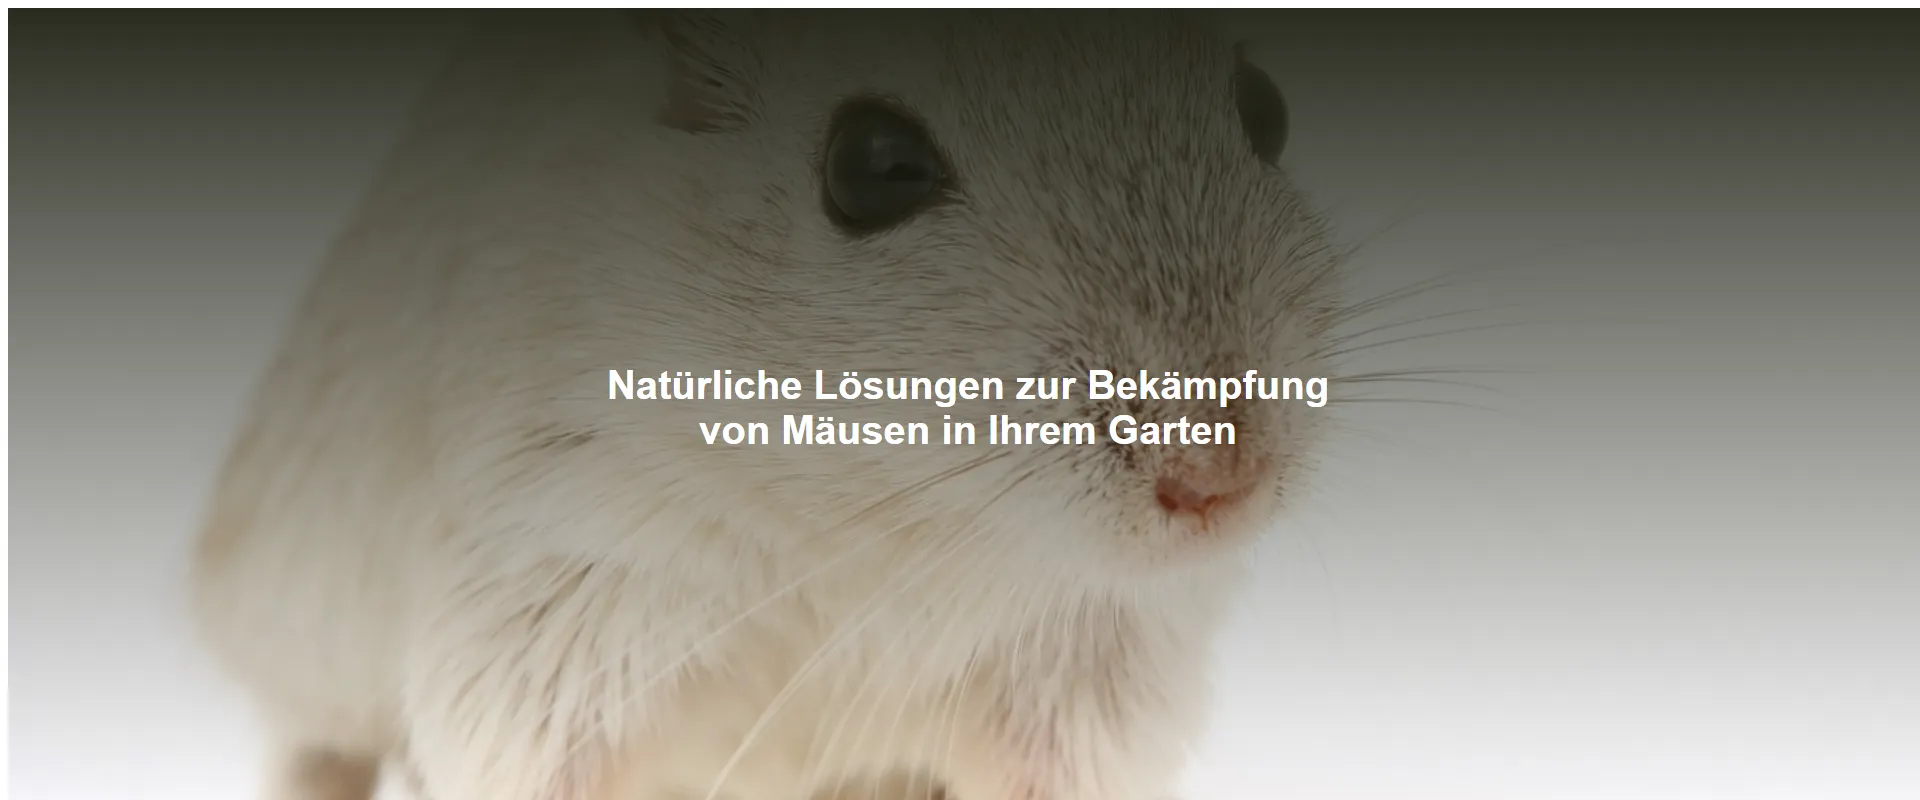 Natürliche Lösungen zur Bekämpfung von Mäusen in Ihrem Garten